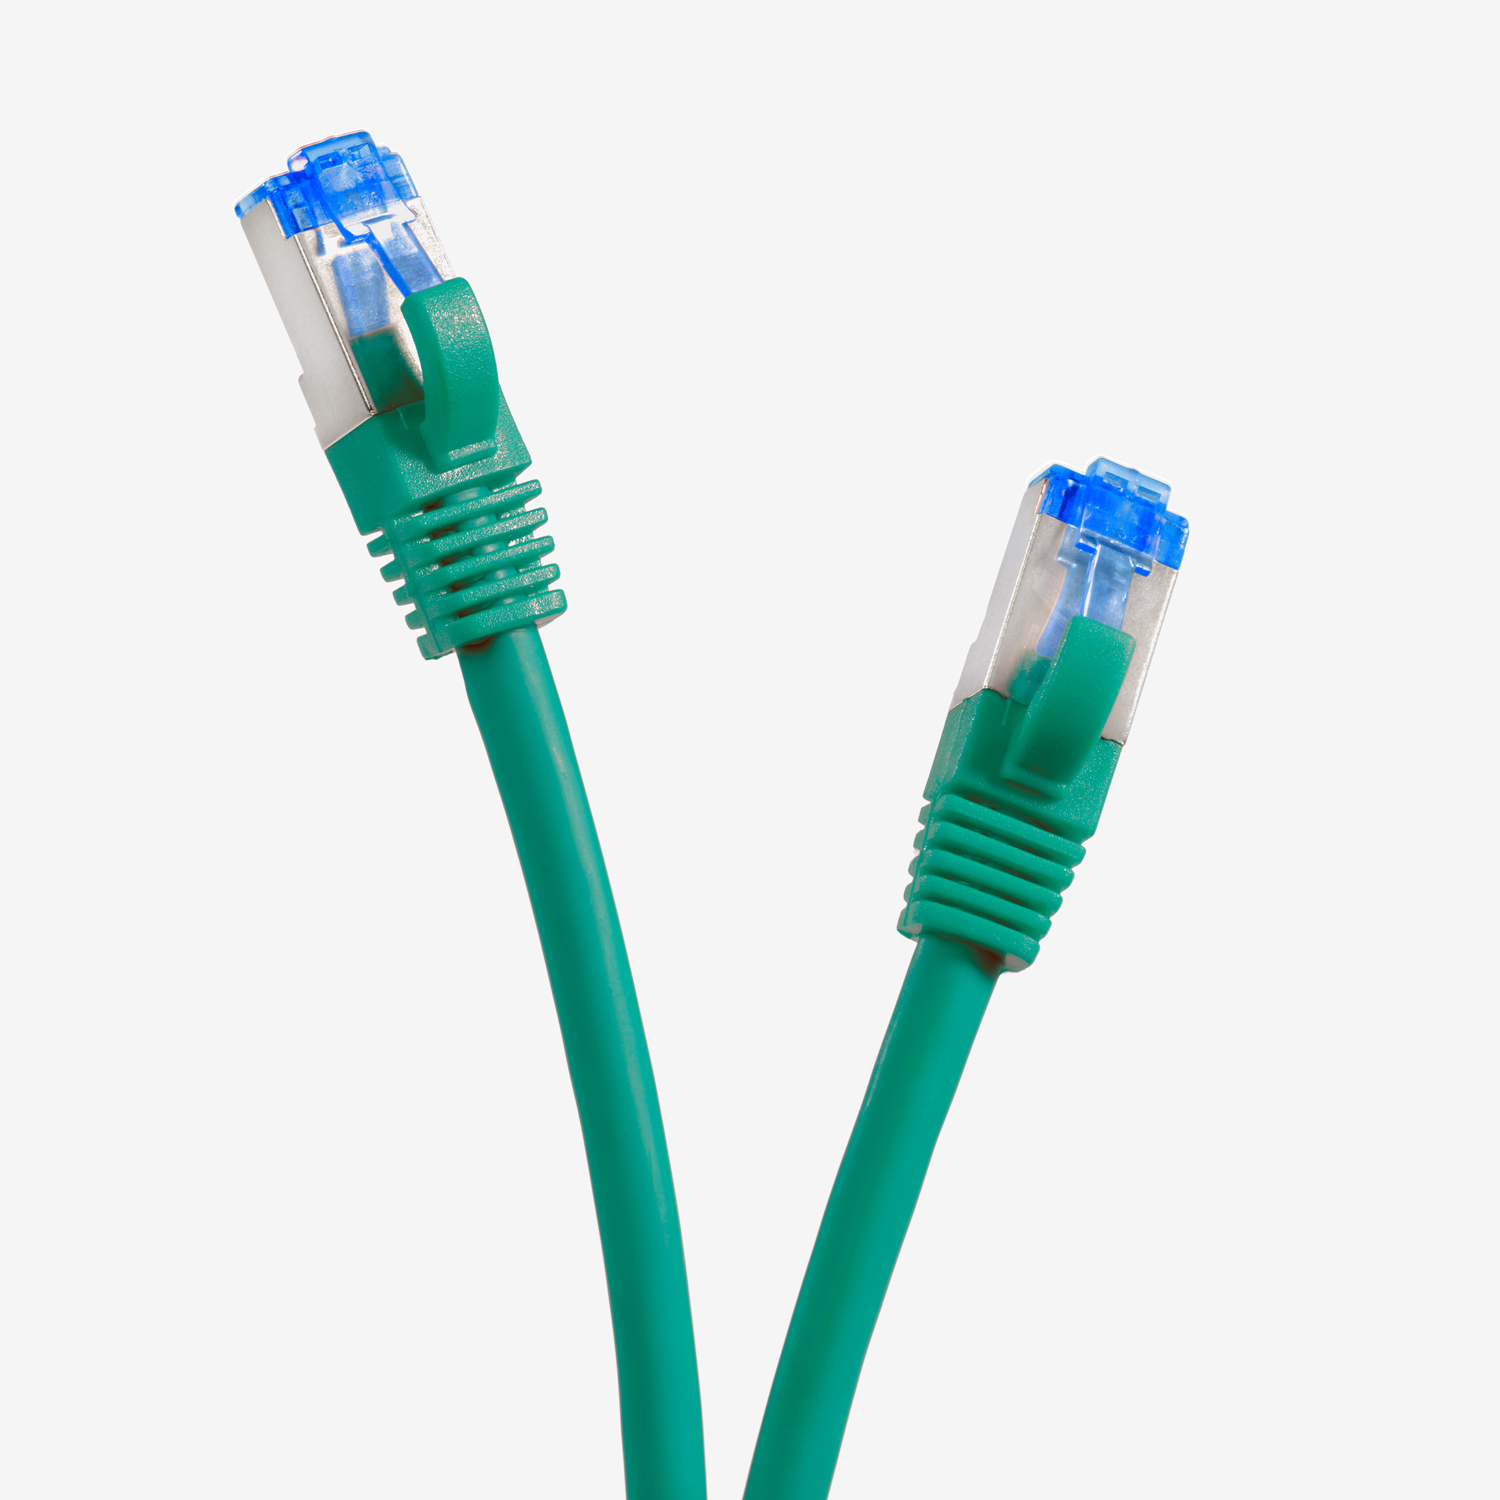 TPFNET 10m Patchkabel m / grün, Netzwerkkabel 10 S/FTP Netzwerkkabel, 10GBit